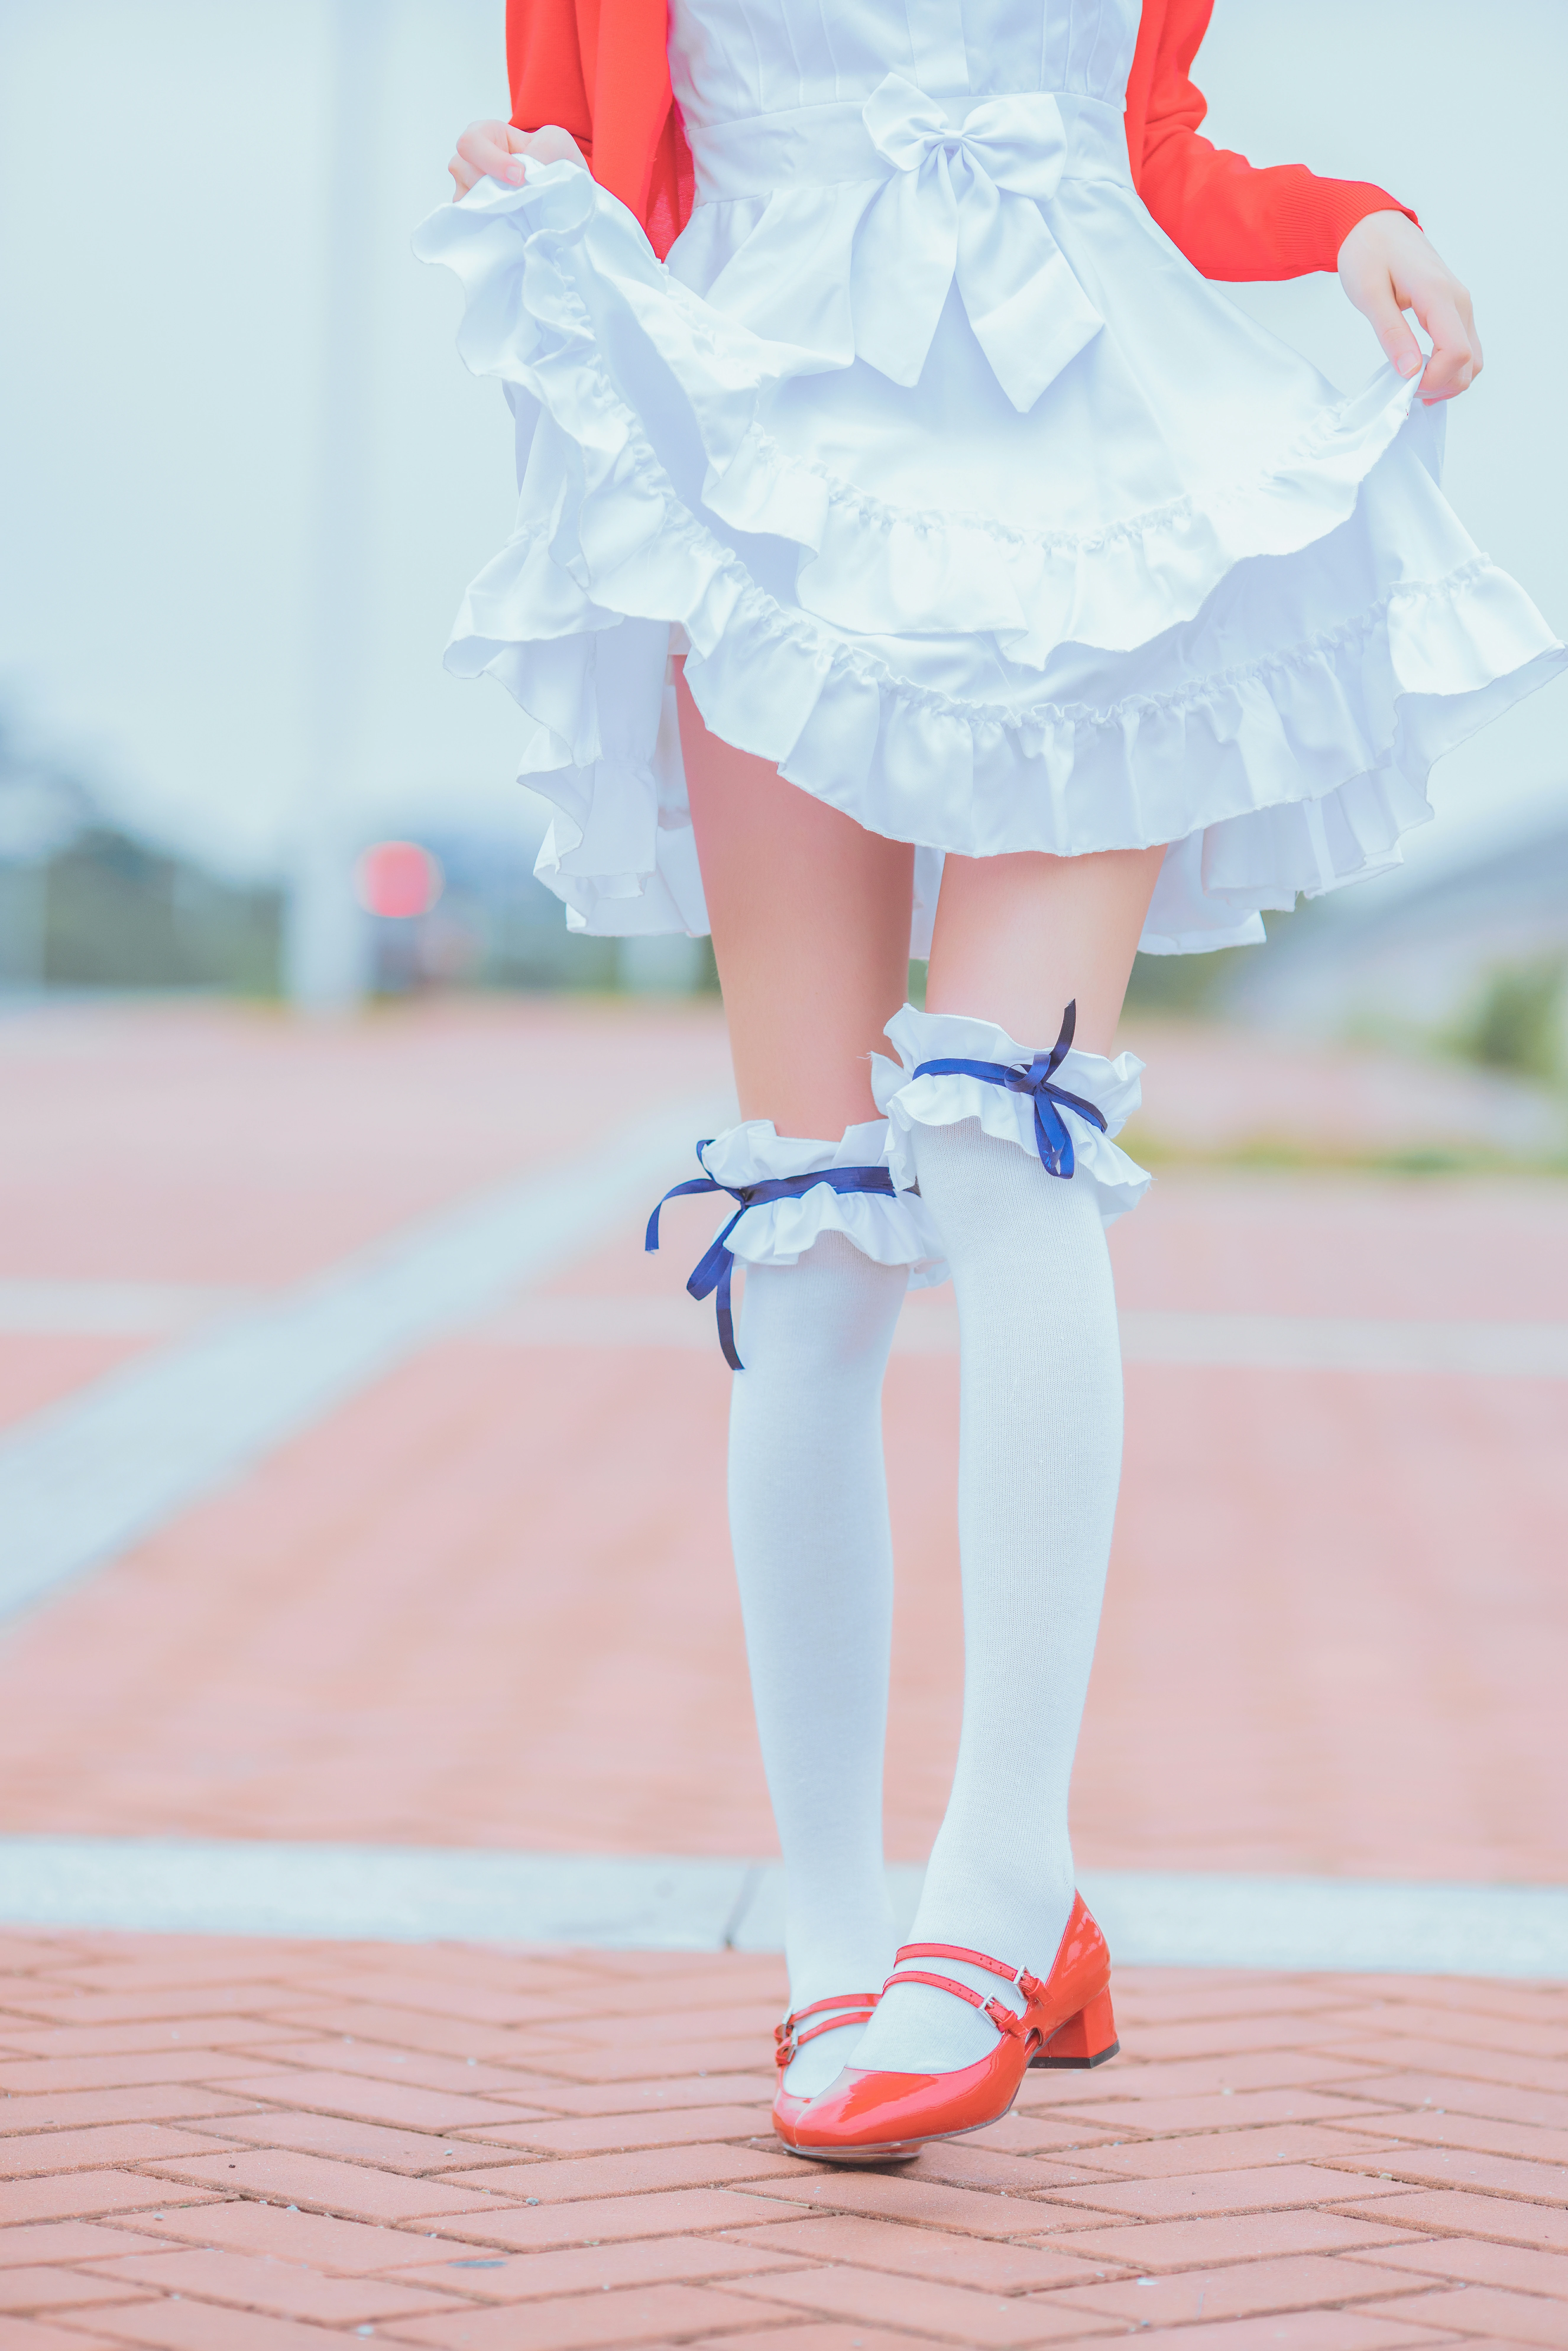 清纯少女 桜桃喵 红色外套与白色连衣裙加白色丝袜美腿街拍写真,0015